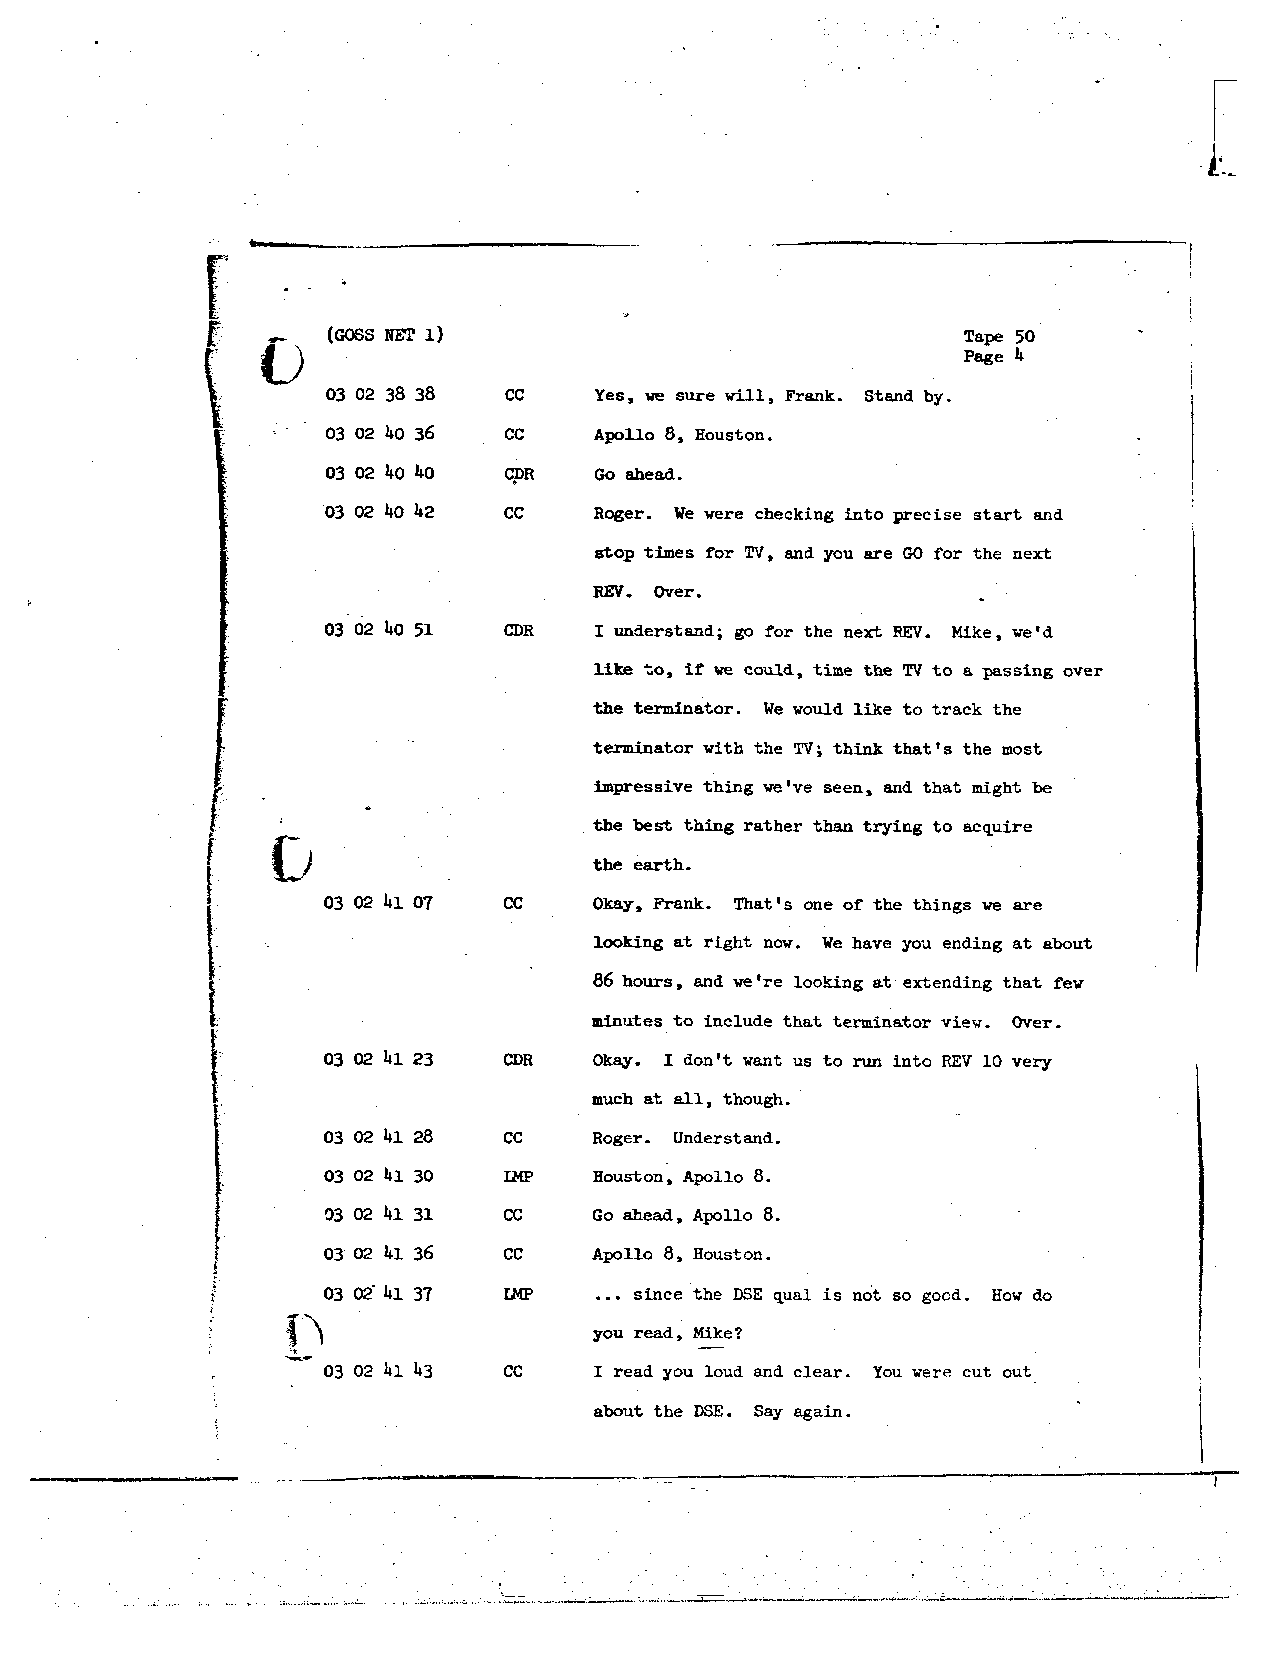 Page 396 of Apollo 8’s original transcript